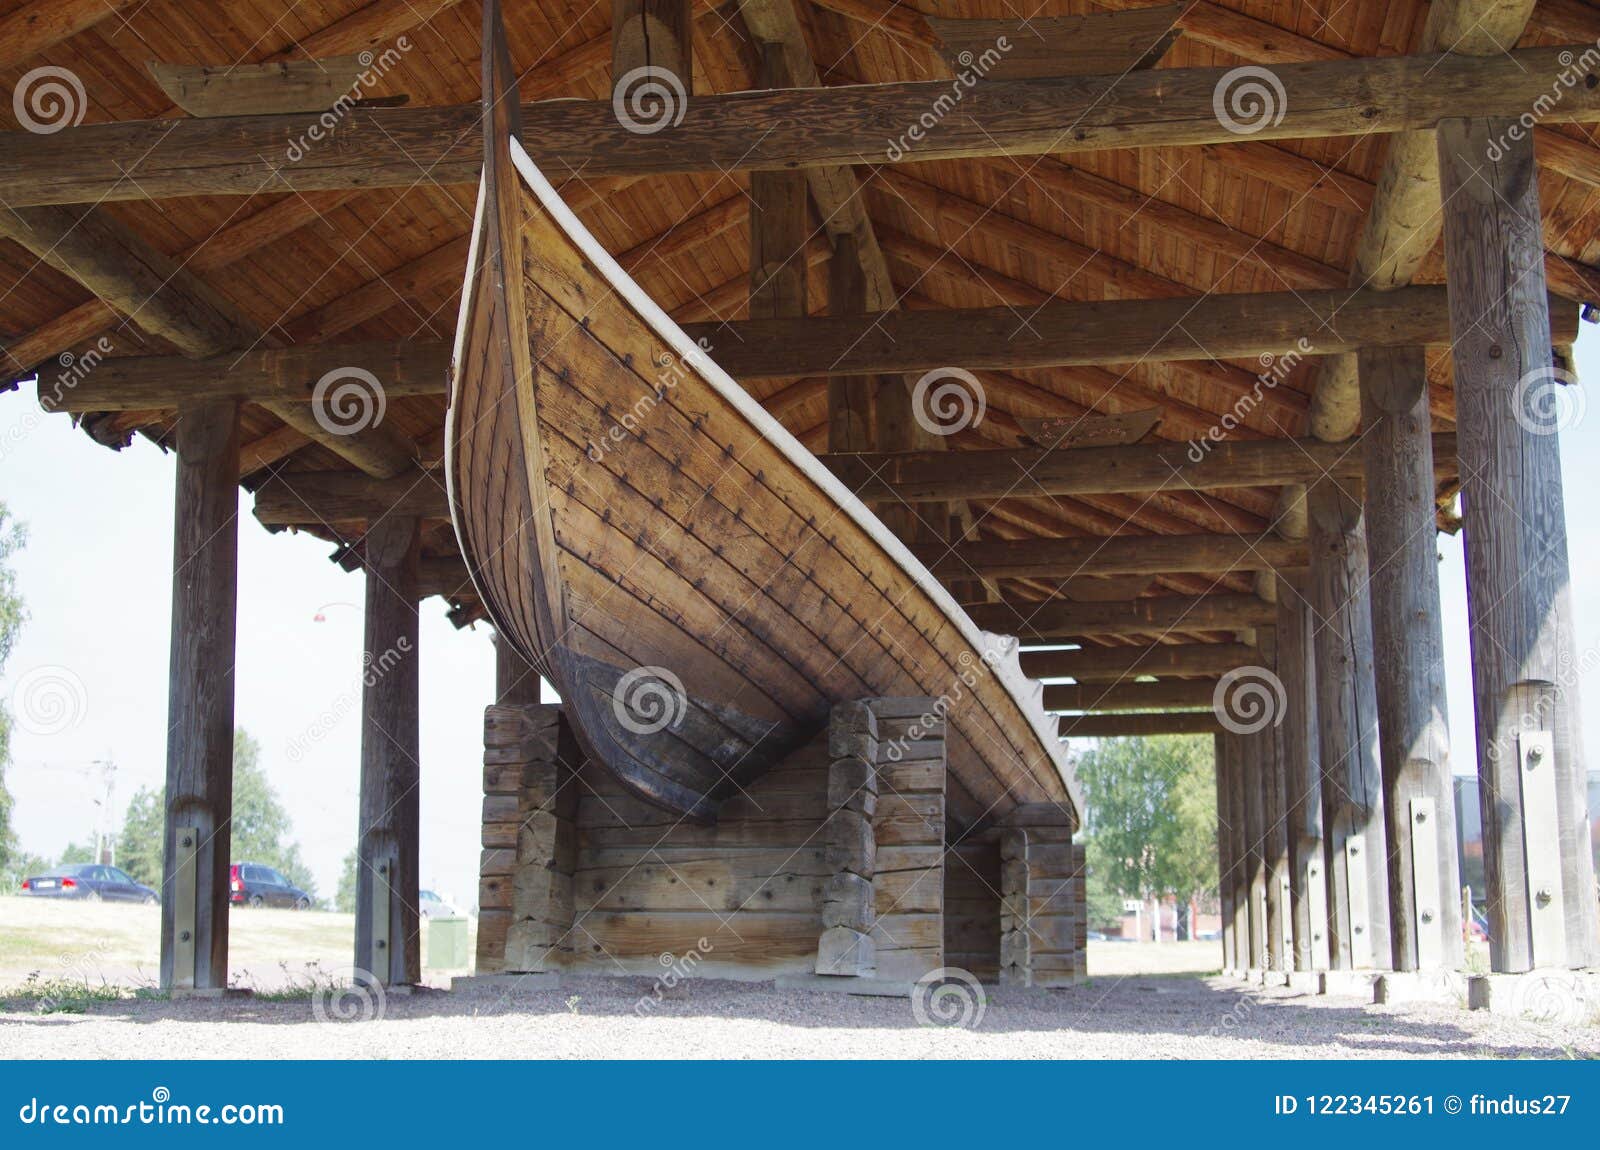 viking longboat in dalarna , sweden